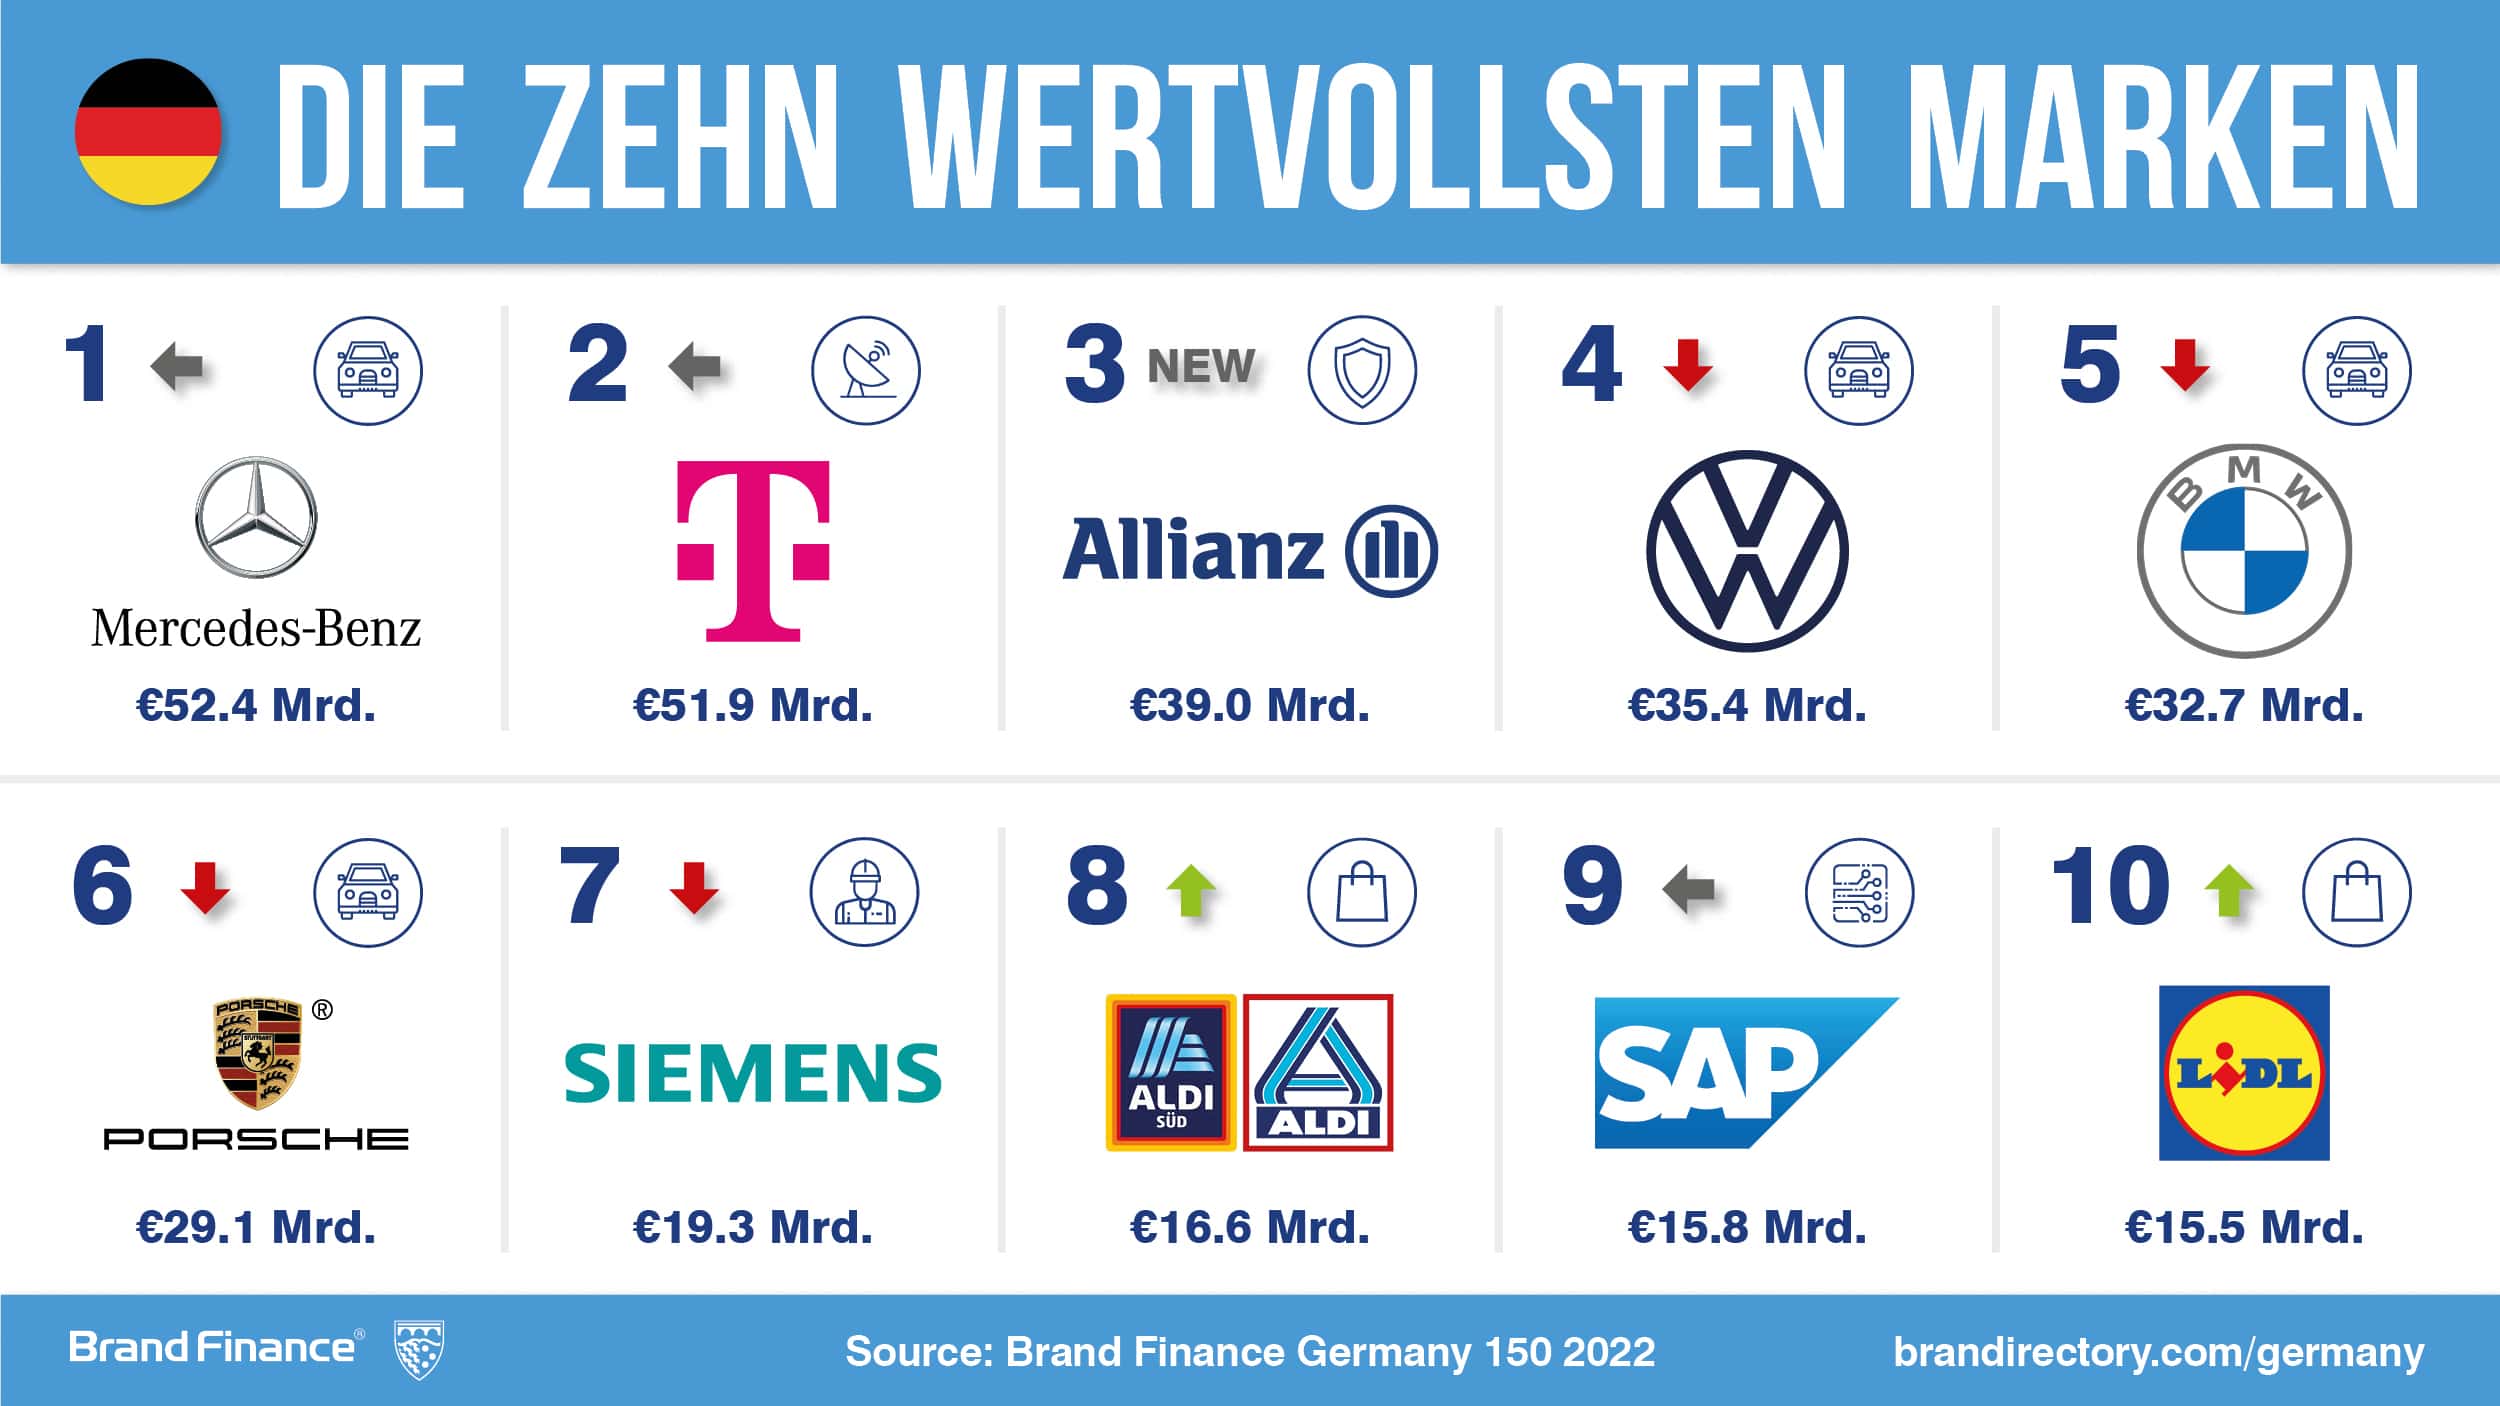 Deutsche Marken Top 3: Mercedes-Benz, Deutsche Telekom und Allianz